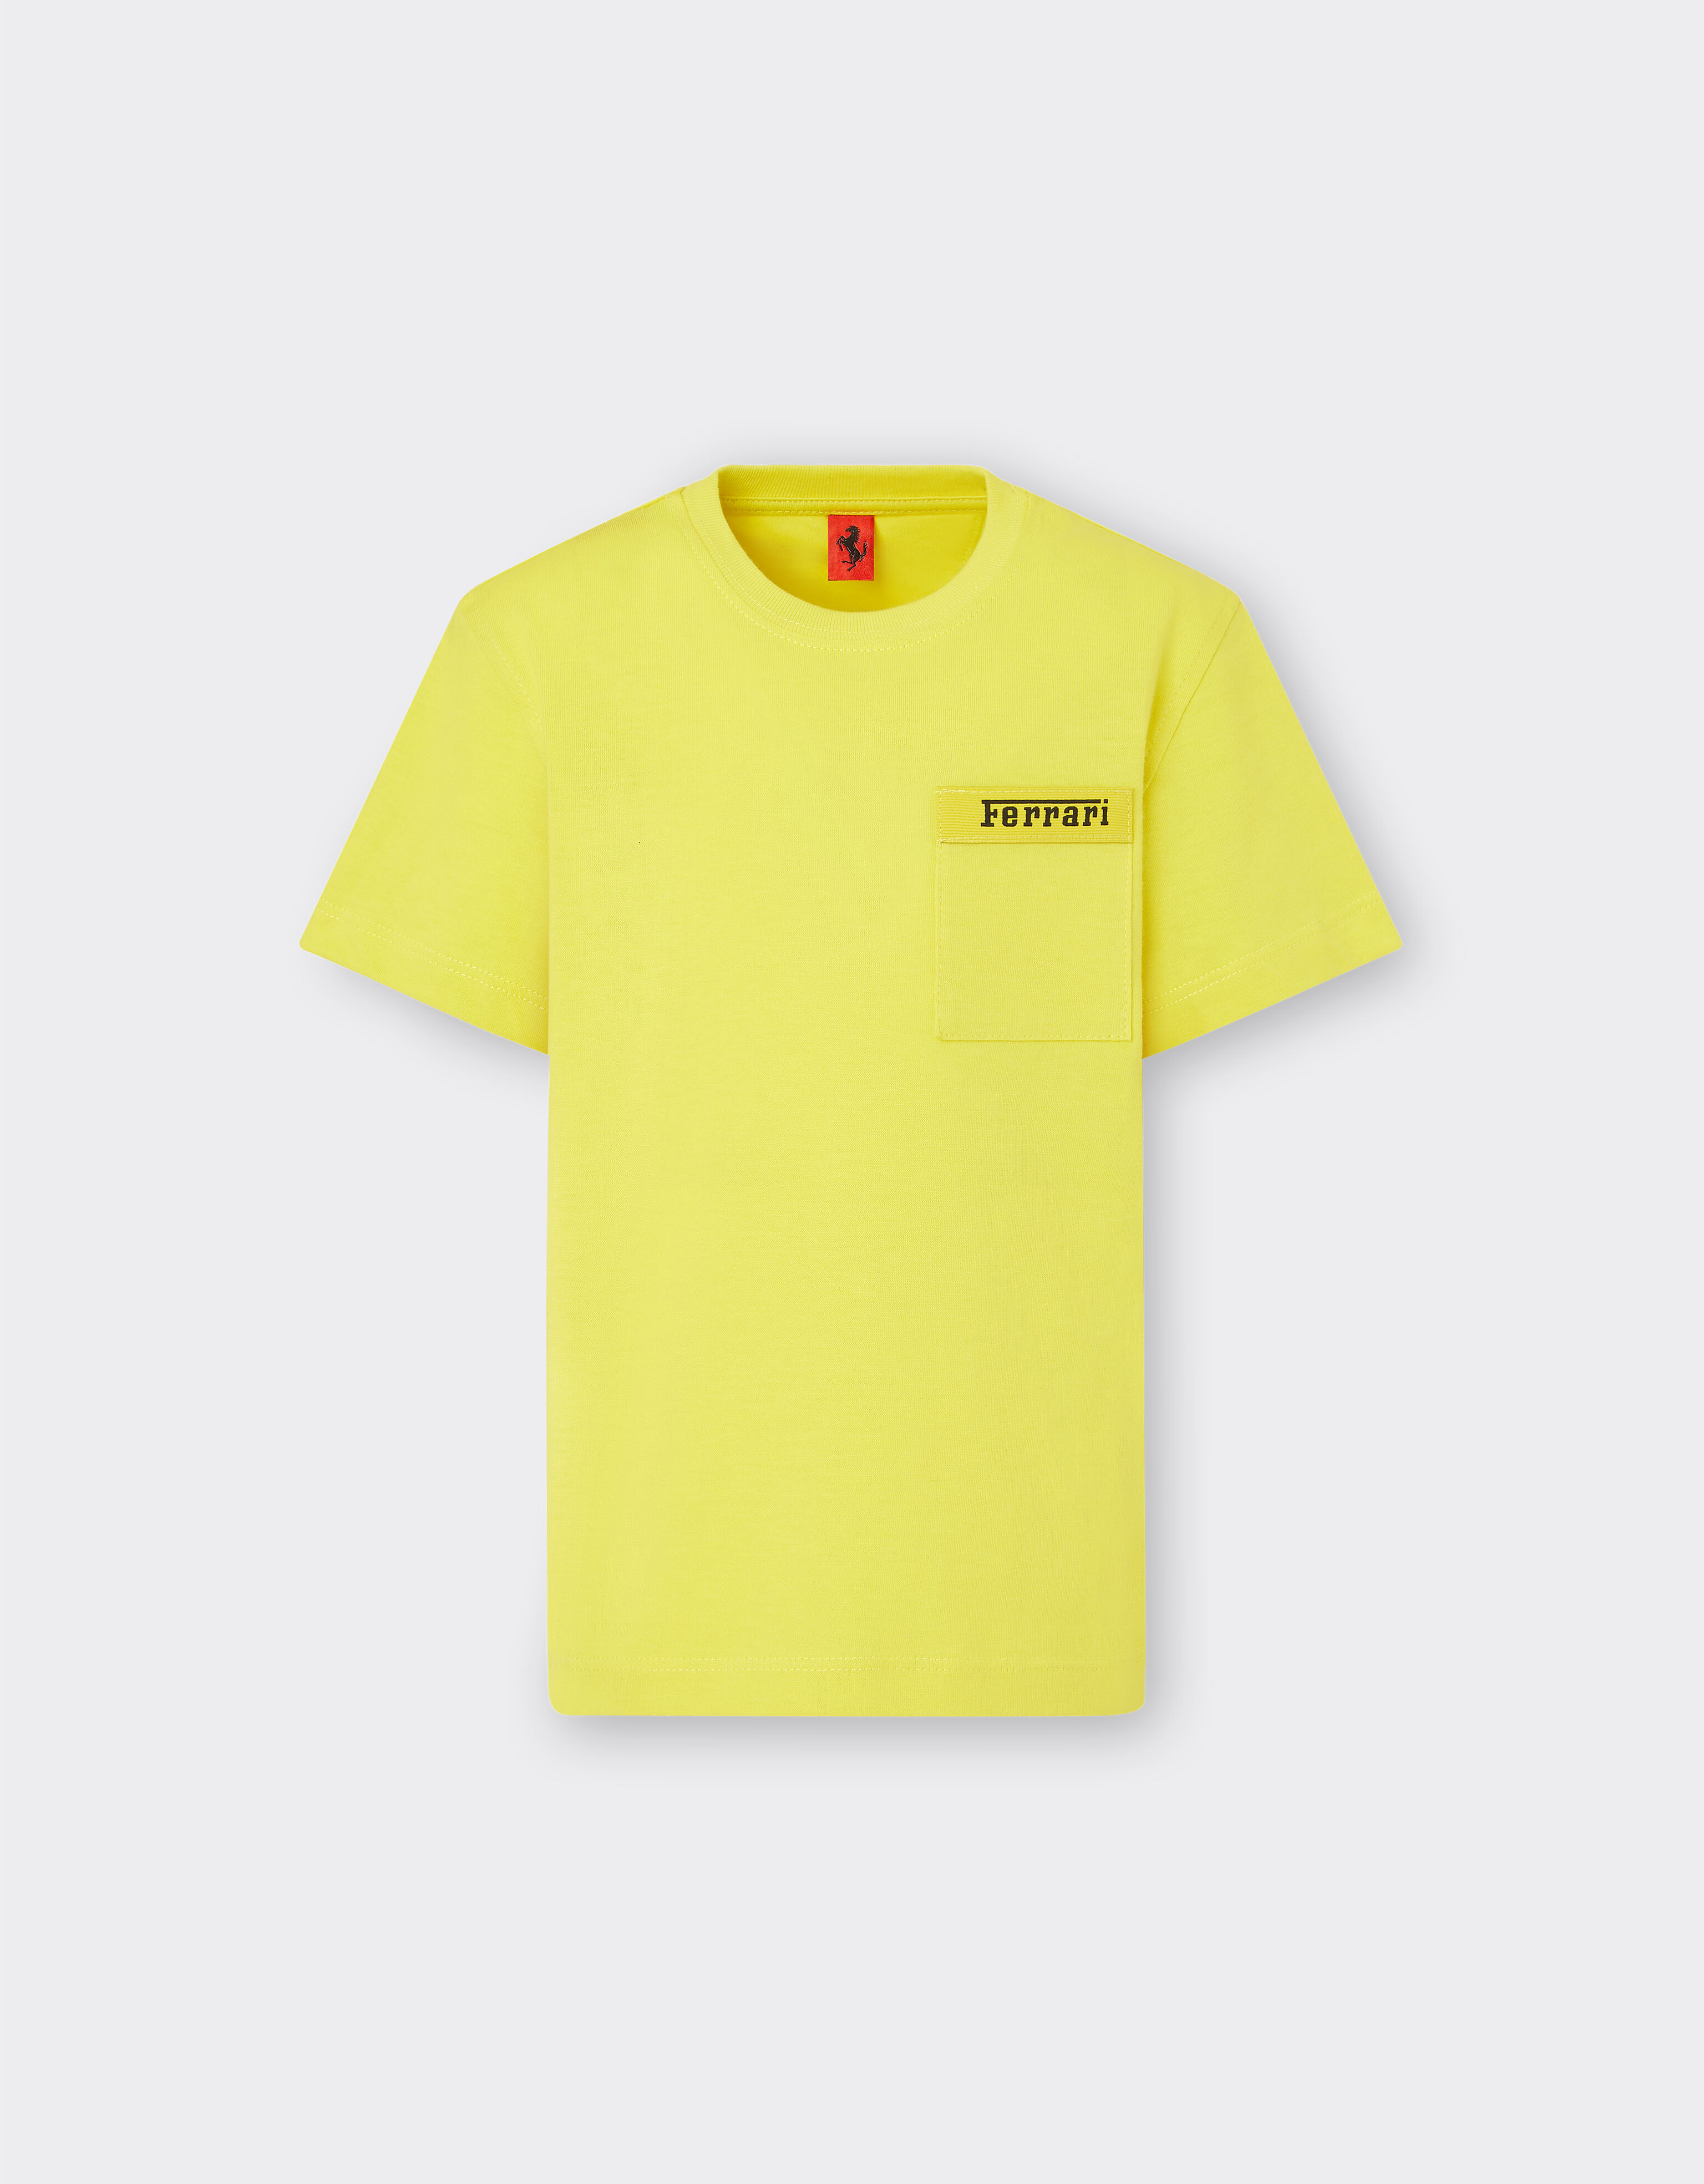 Ferrari T-shirt in cotone con logo Ferrari Rosso Corsa 20162fK